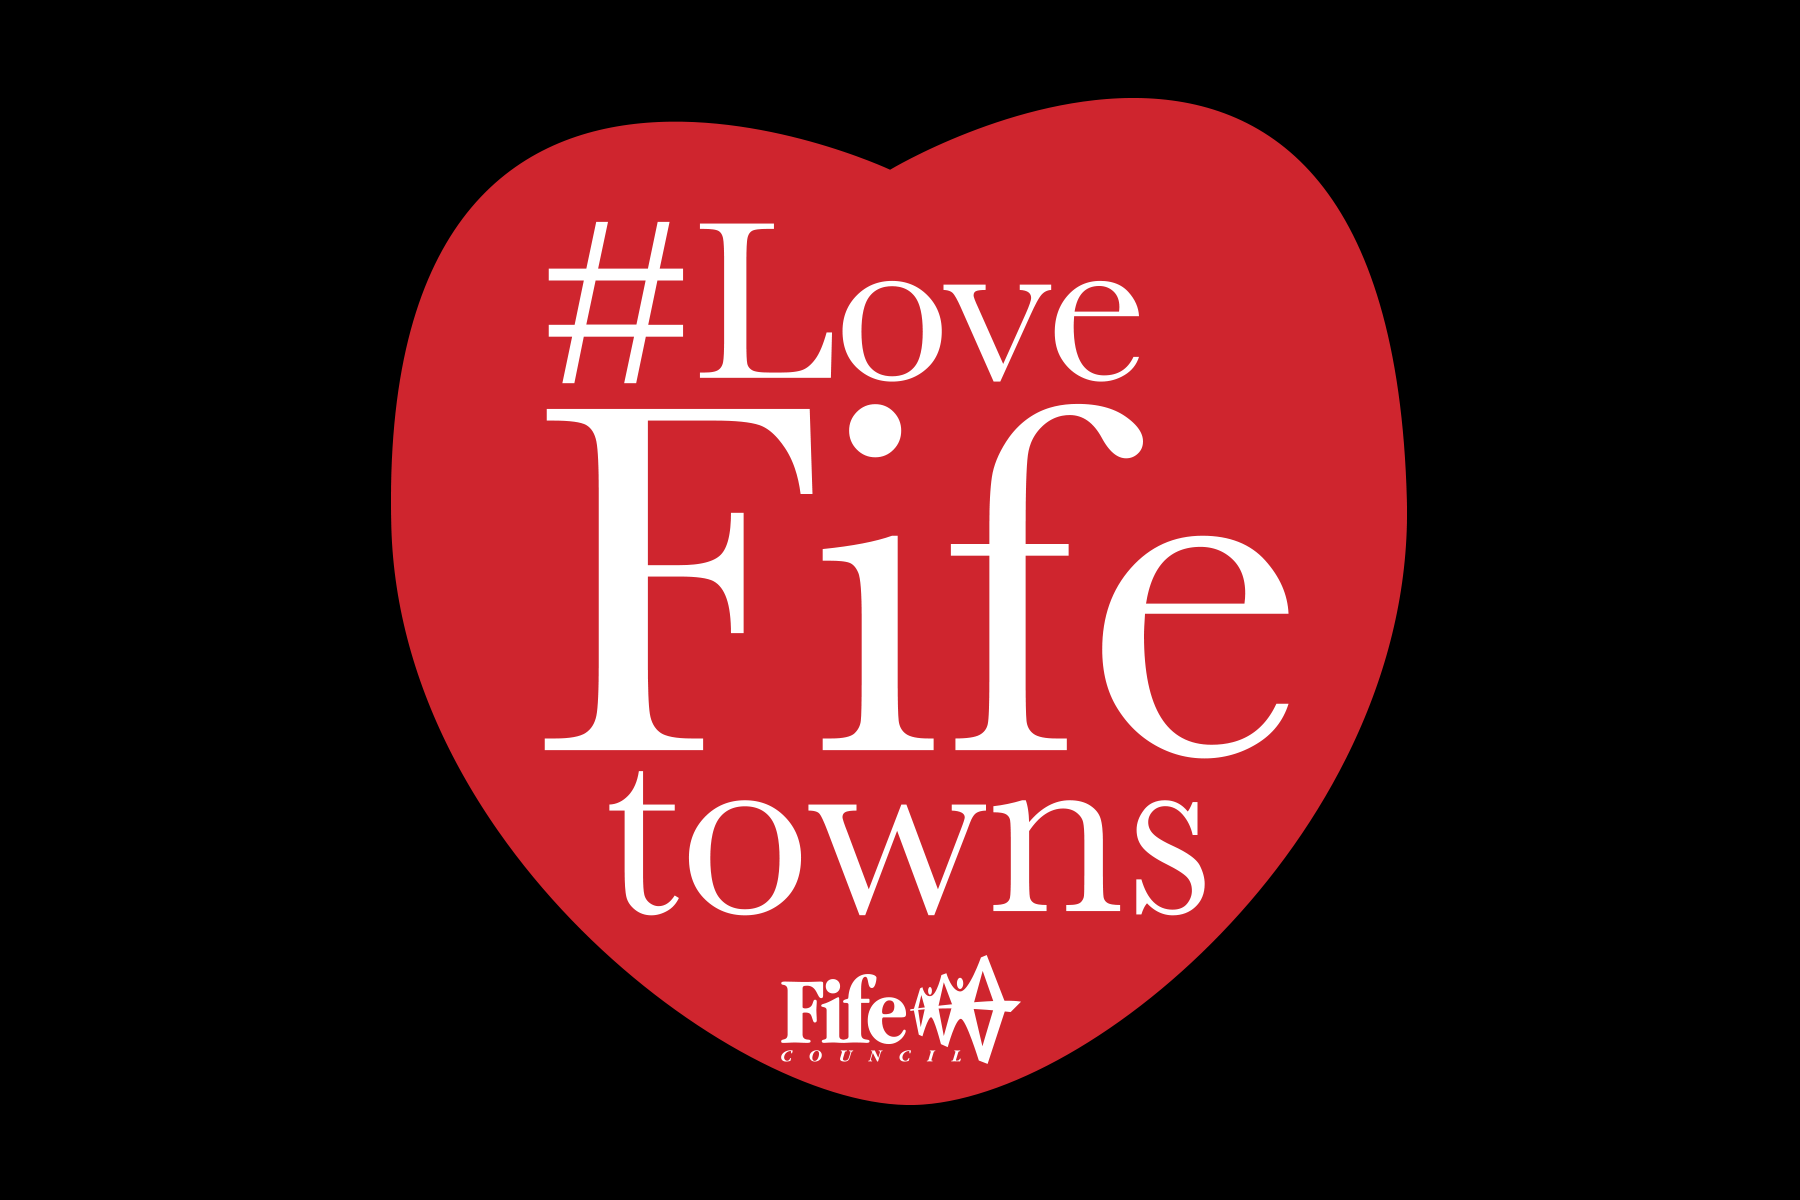 Love Fife towns